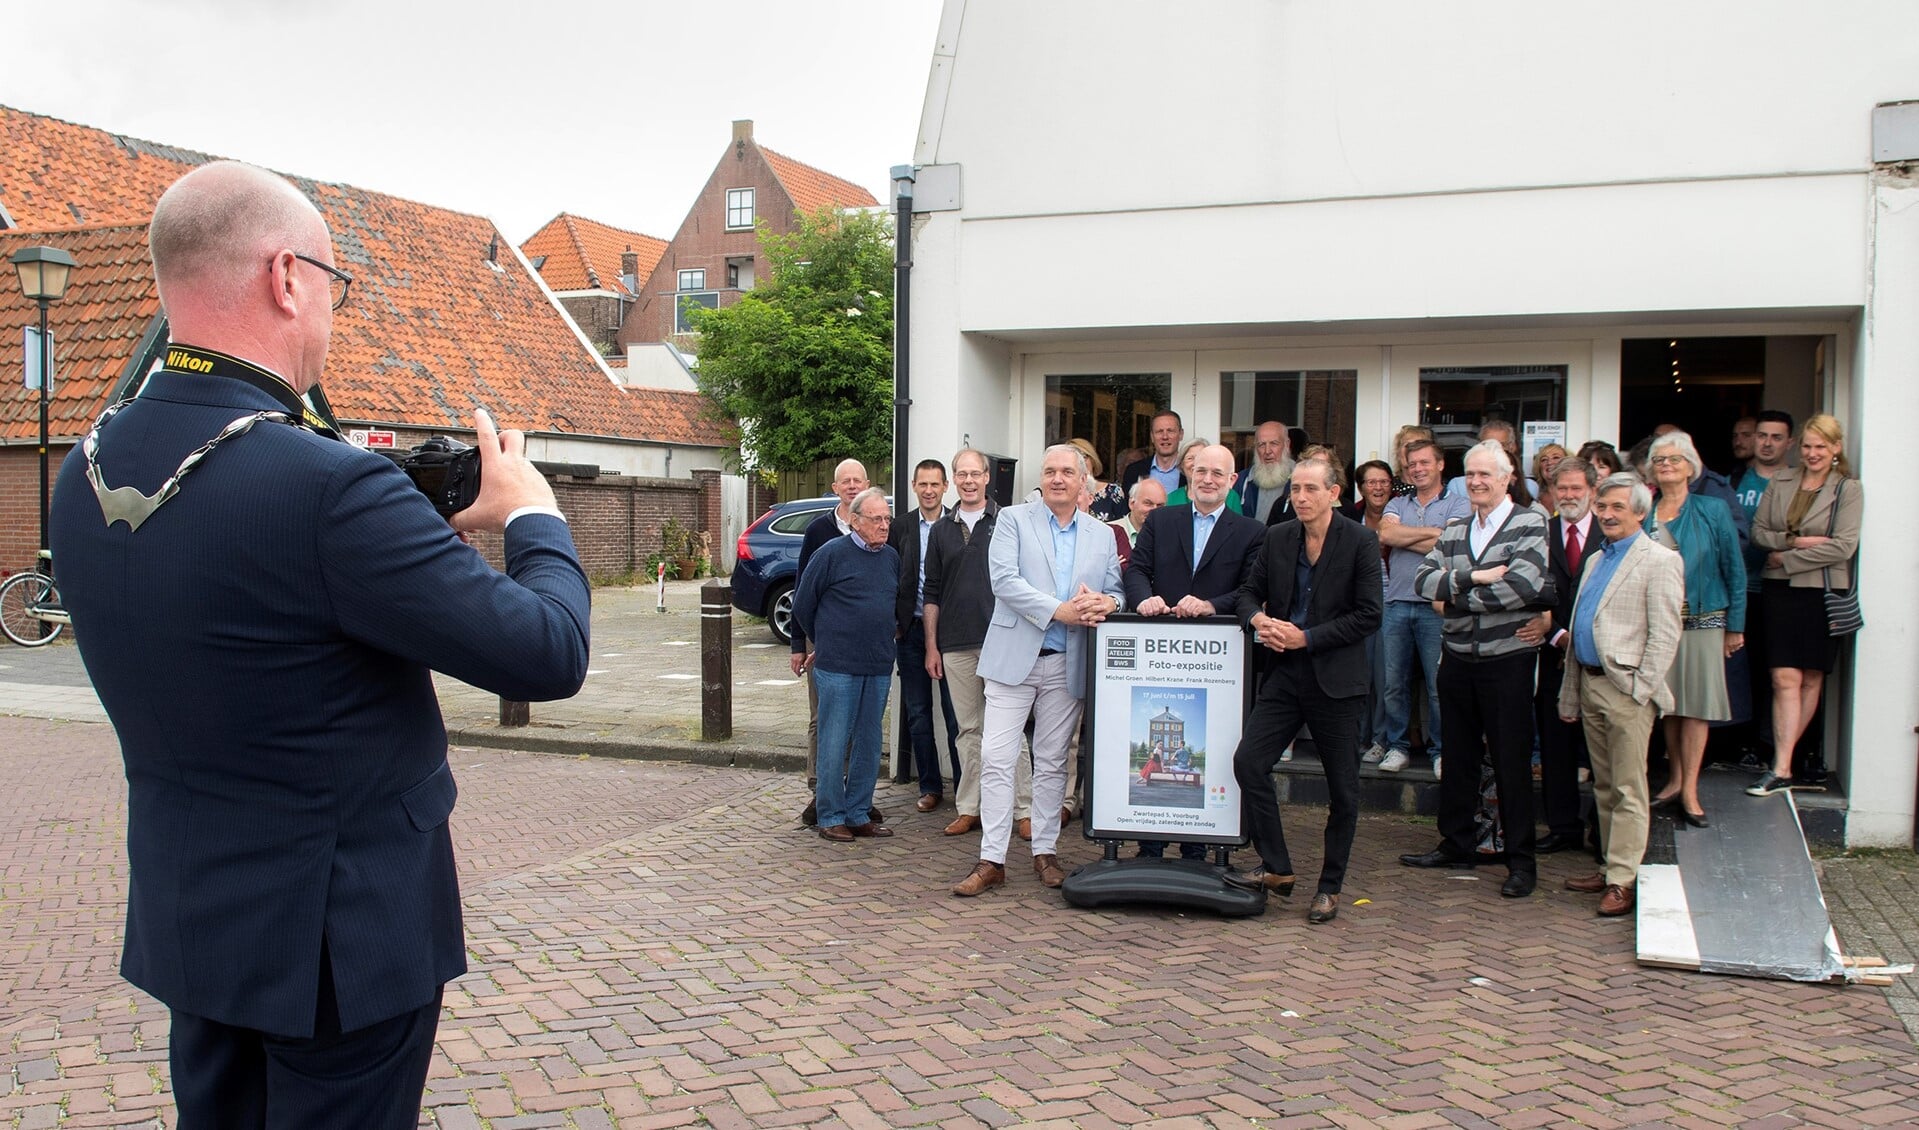 Burgemeester Tigelaar opende de expositie door het maken van een foto (foto: Nivenpress).